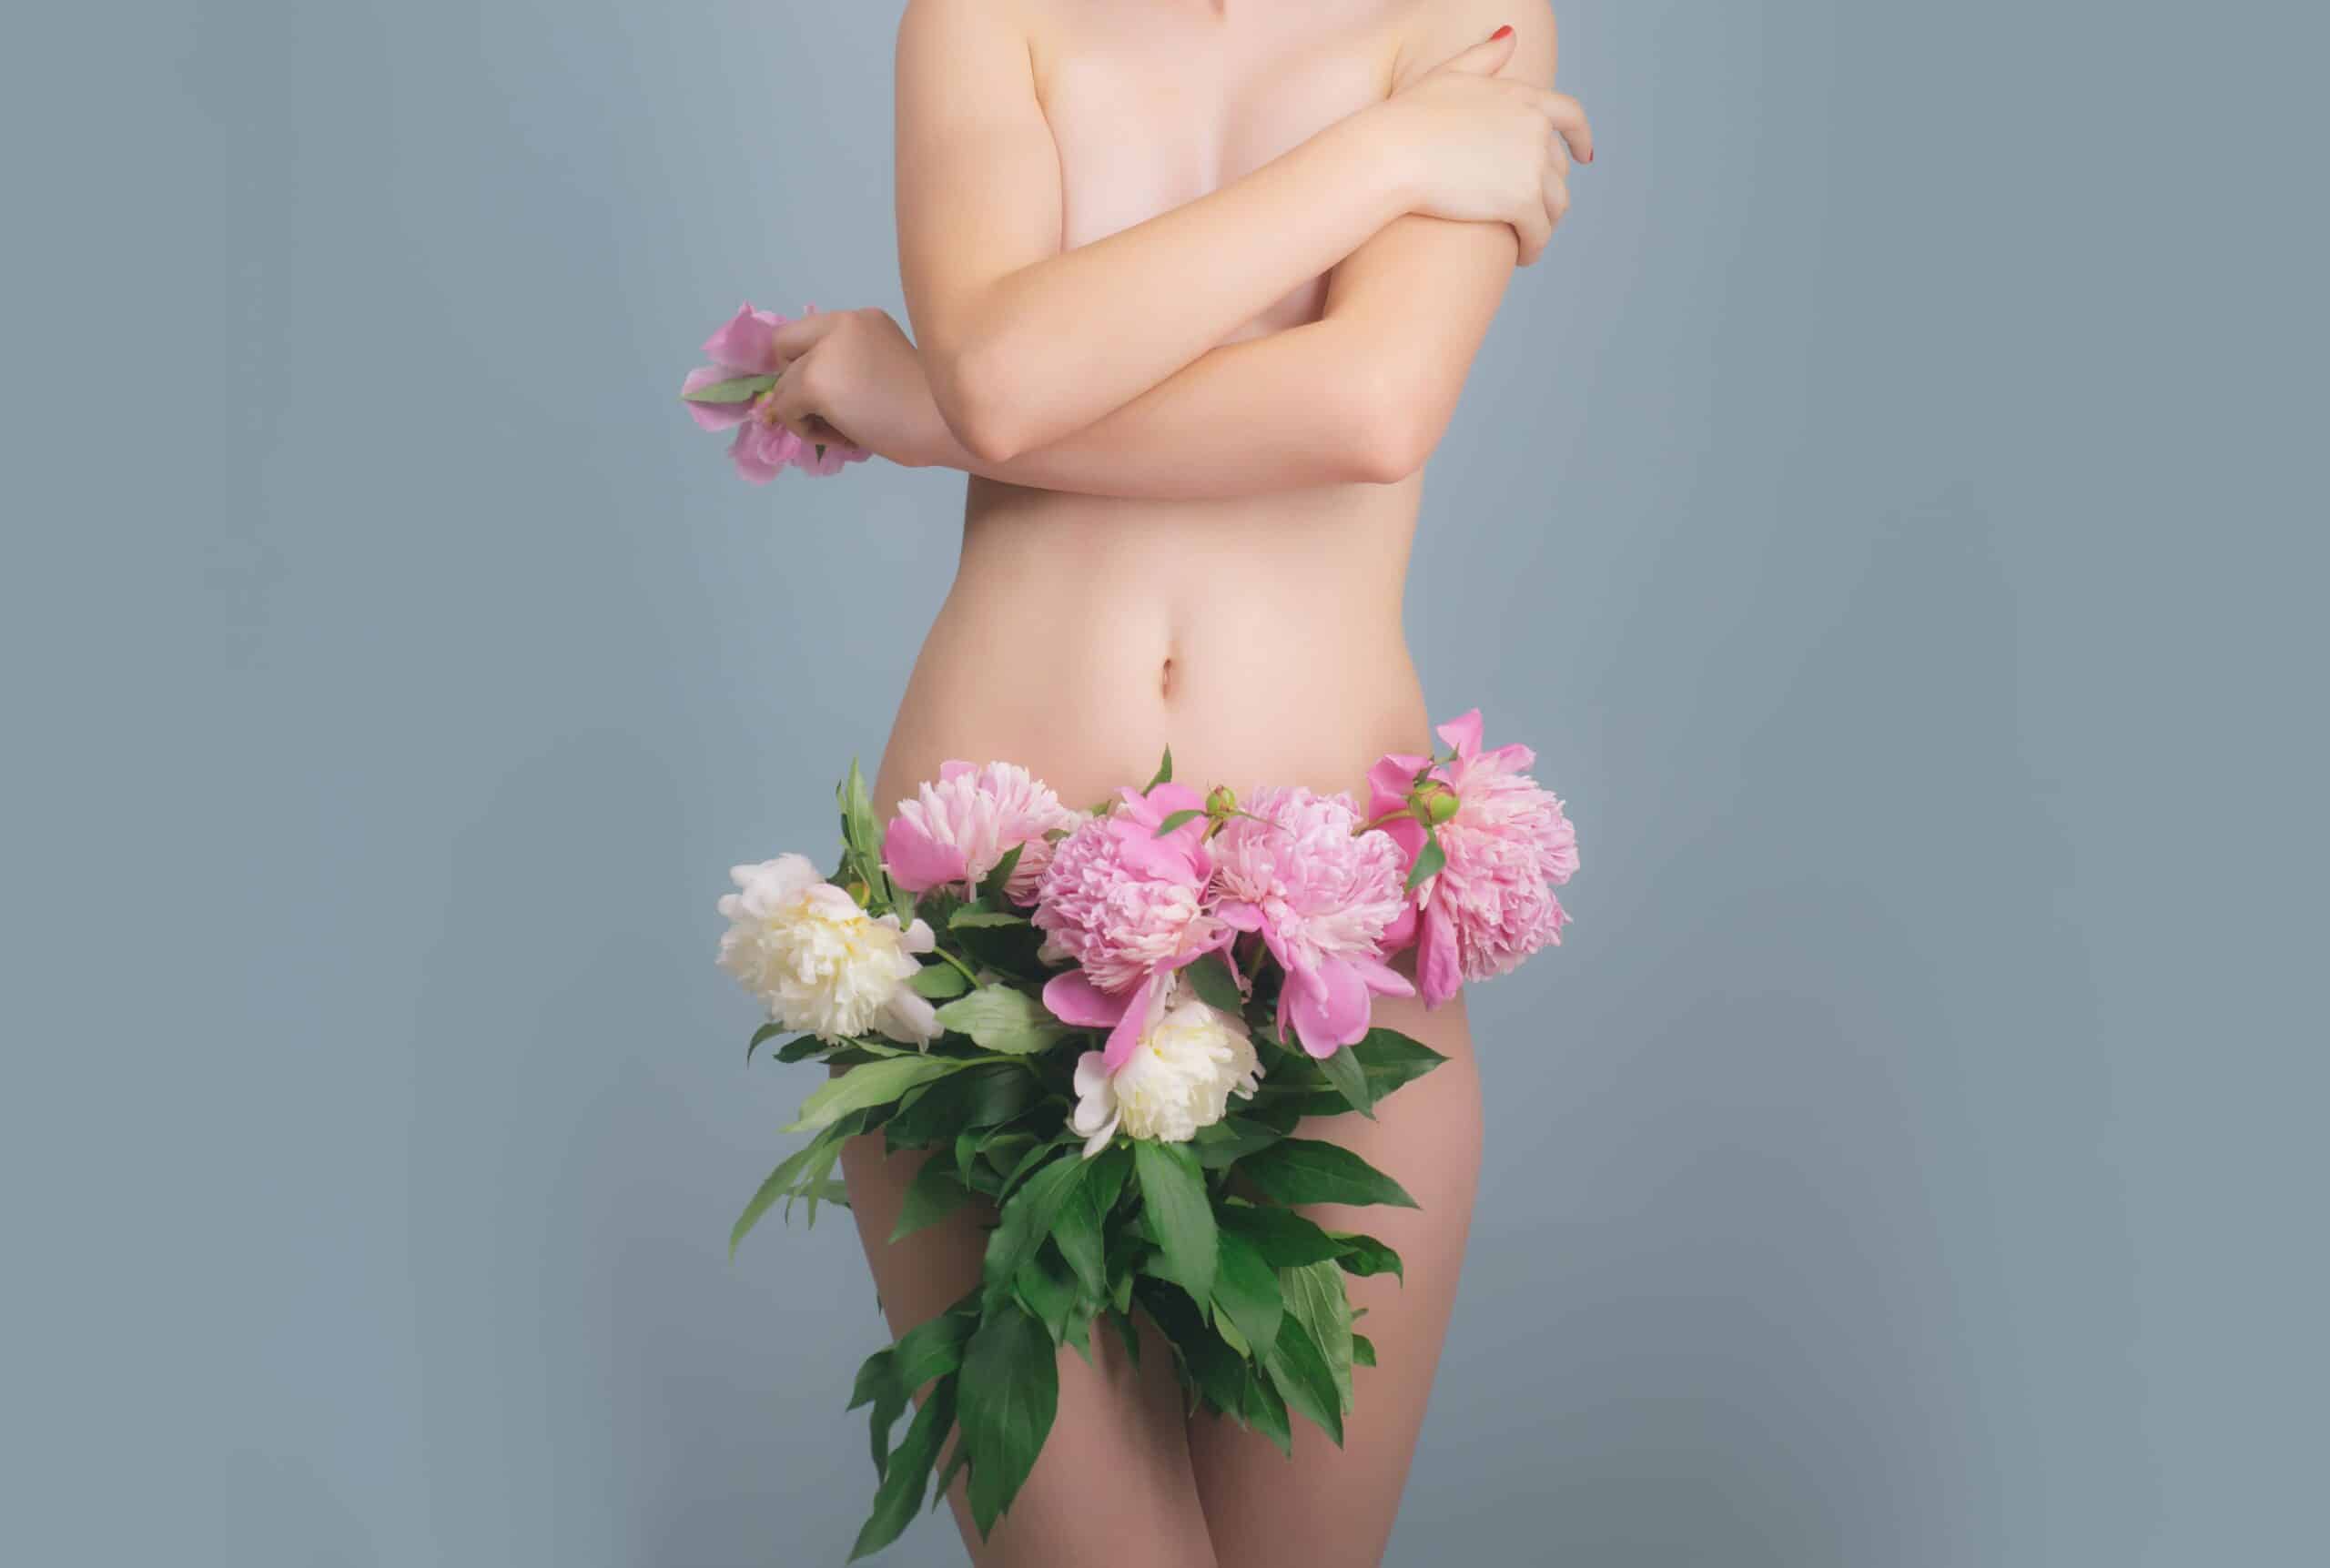 фото красива голая девушка с цветами фото 99